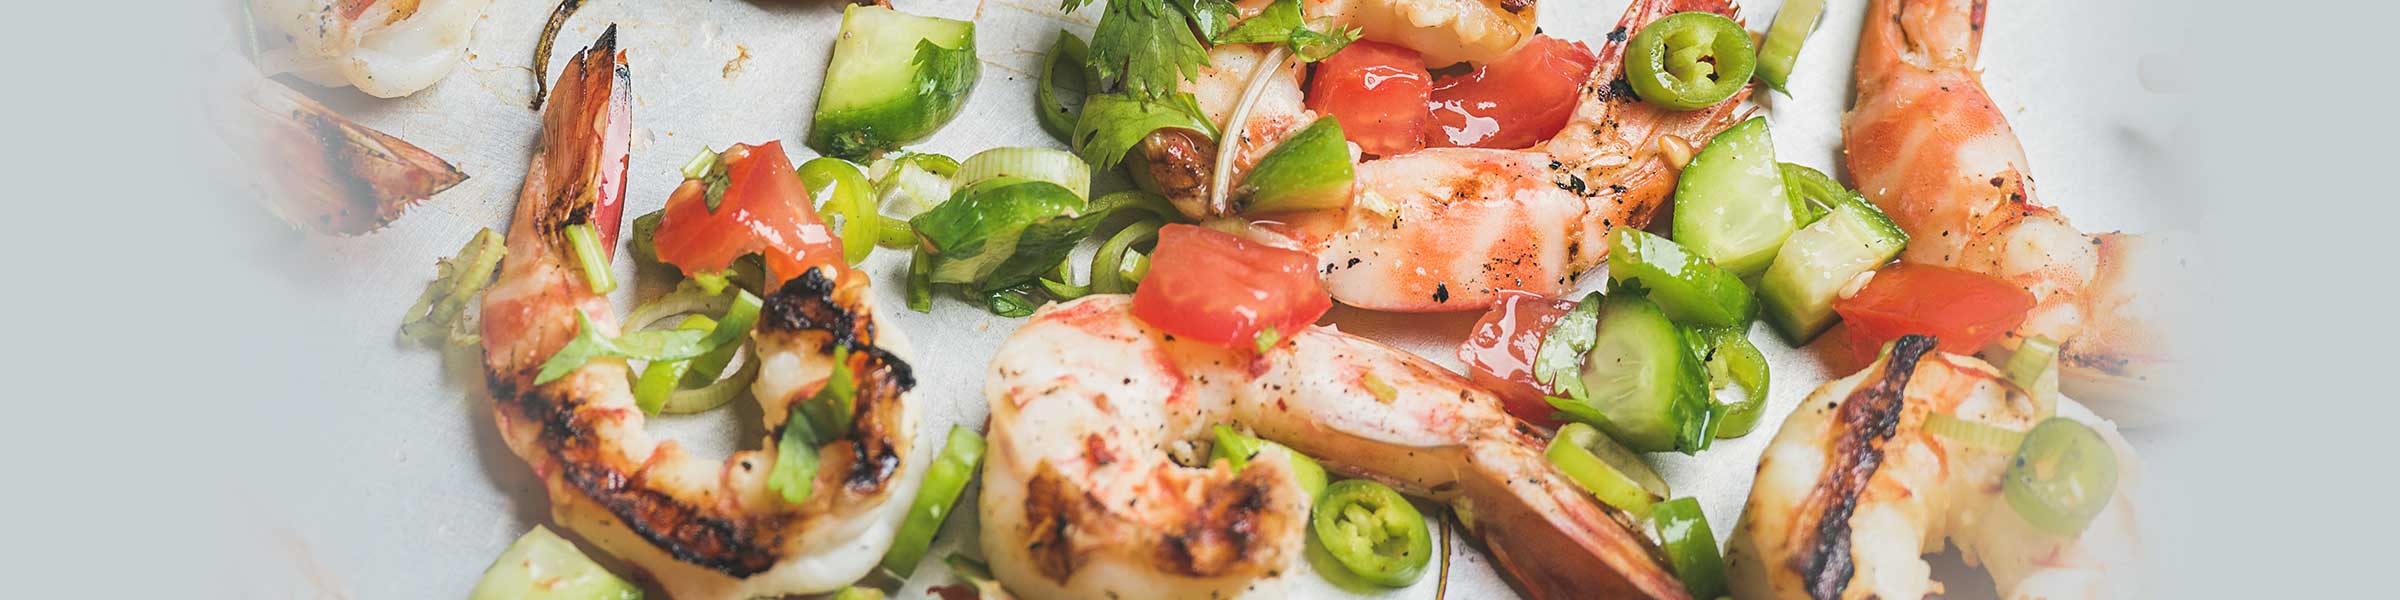 Rodney Strong - Grilled Shrimp Salad